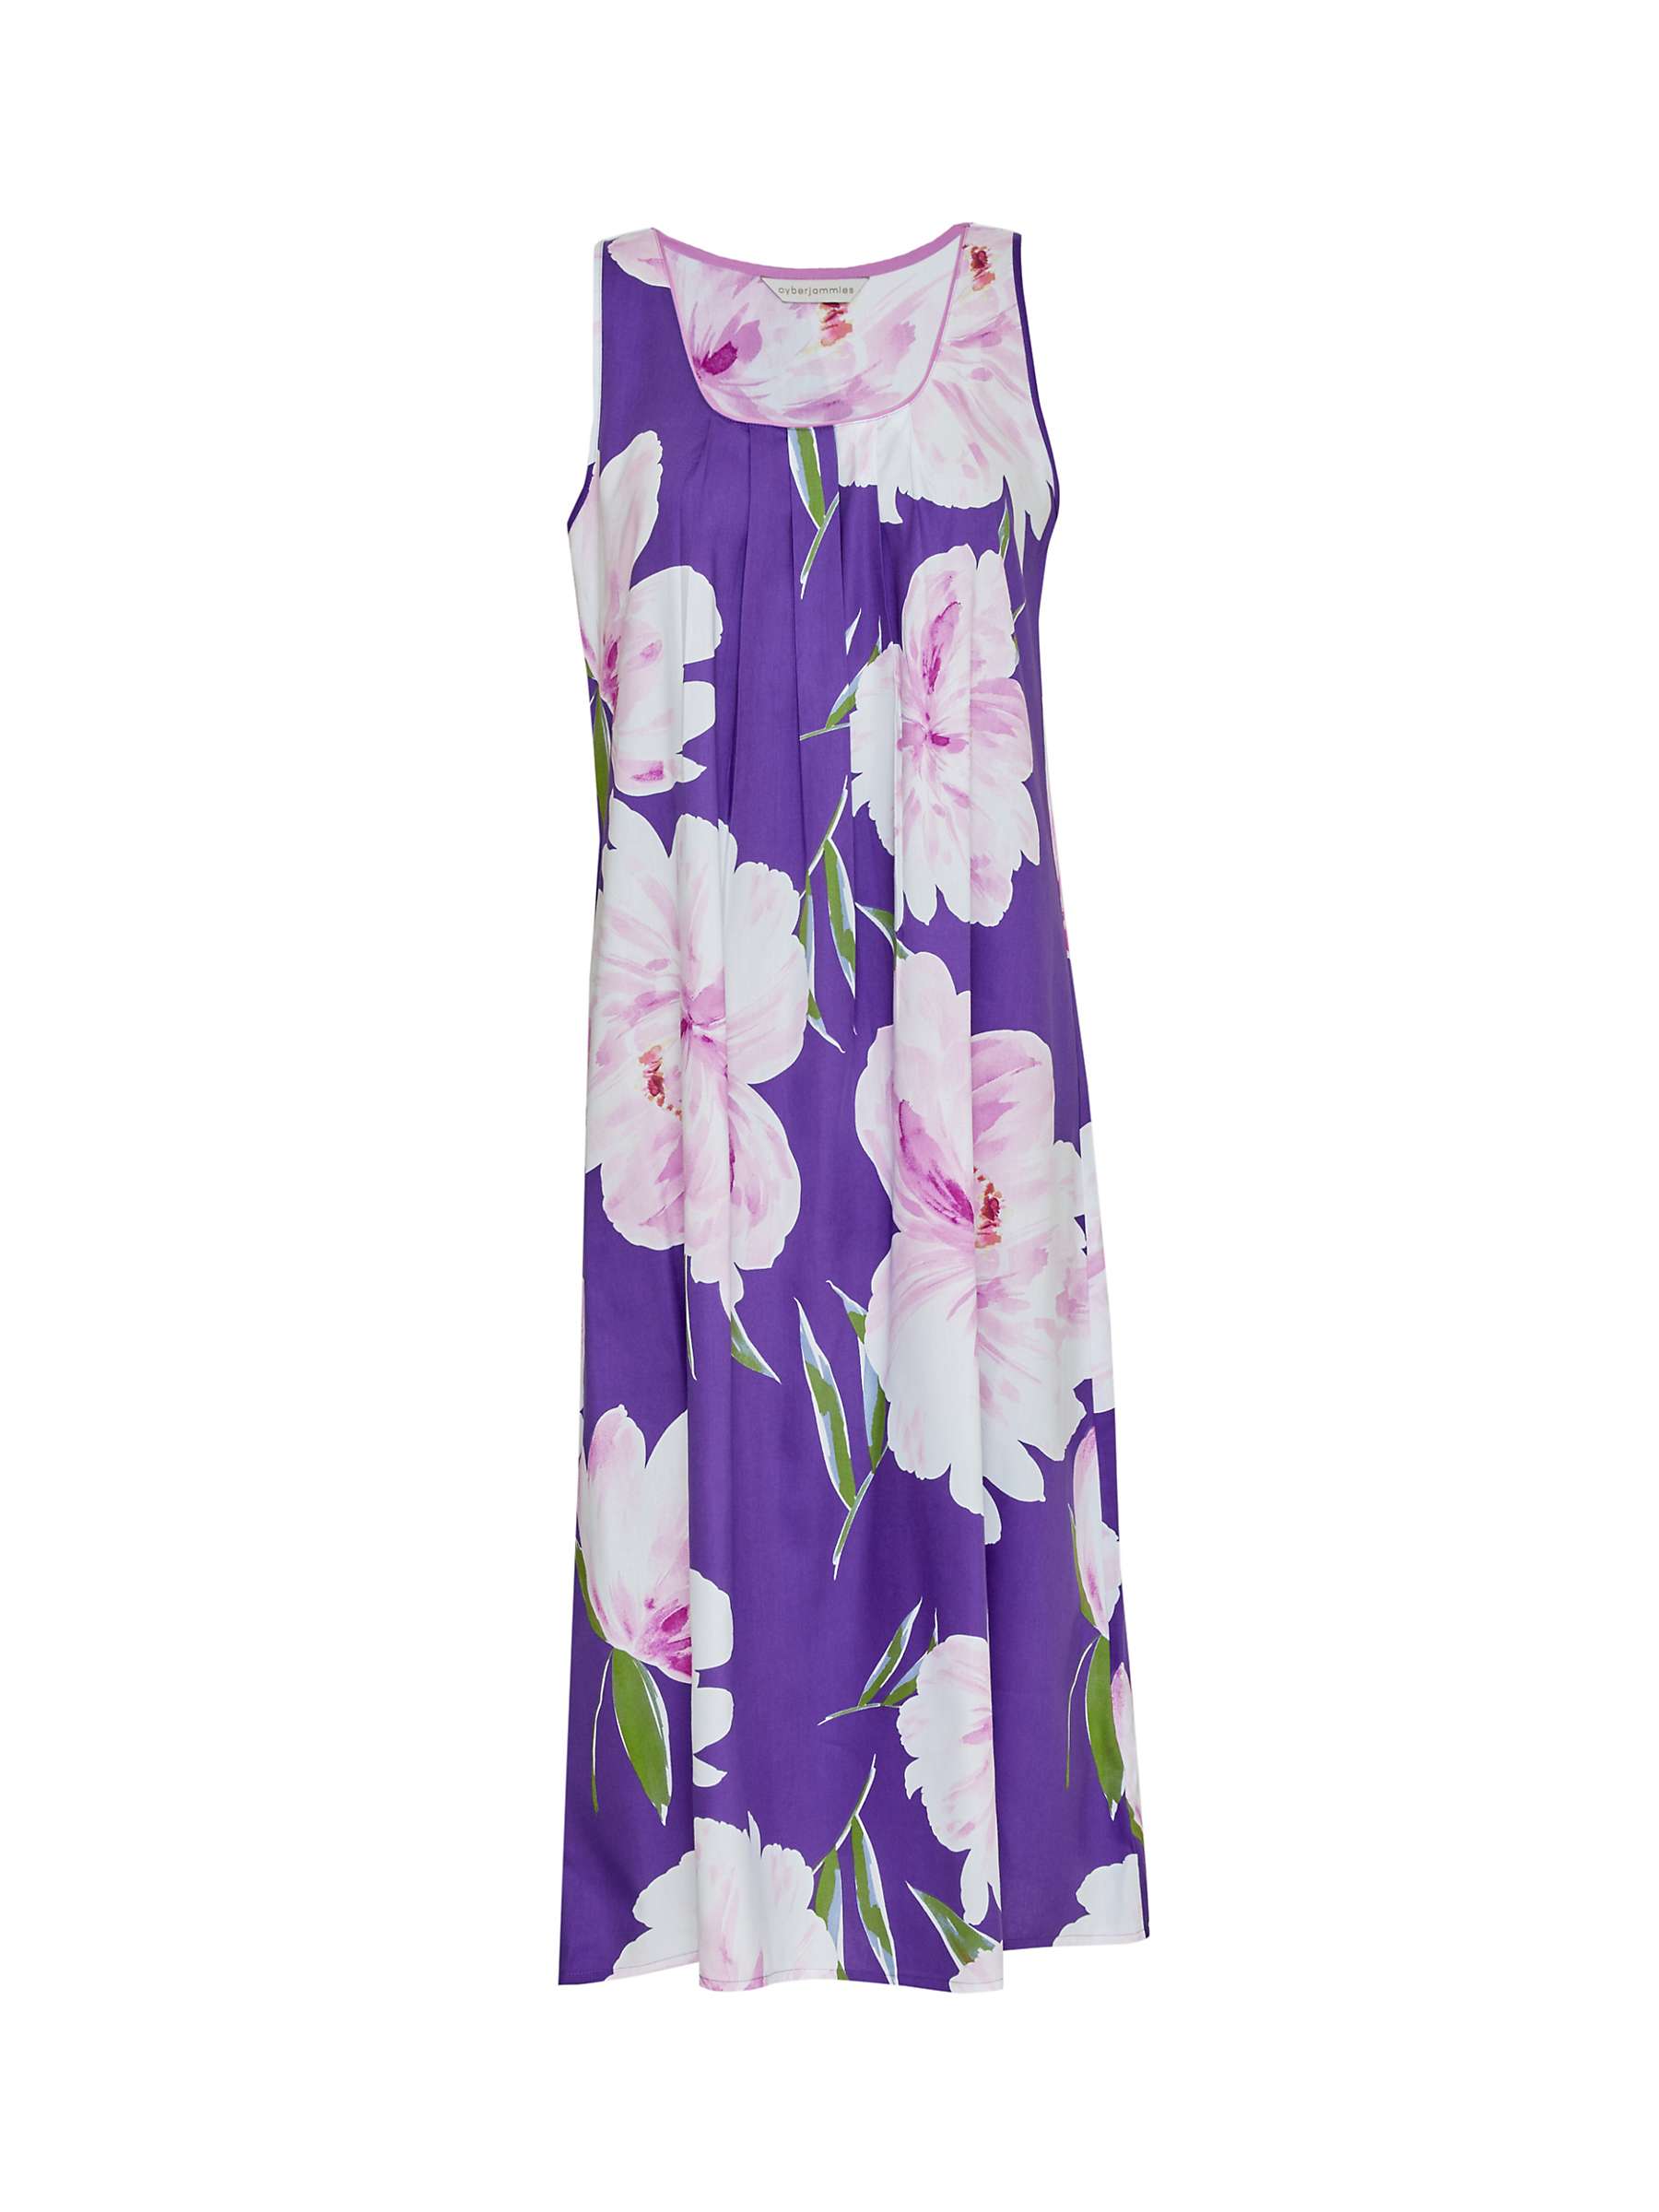 Buy Cyberjammies Floral Sleeveless Nightdress, Purple/Multi Online at johnlewis.com